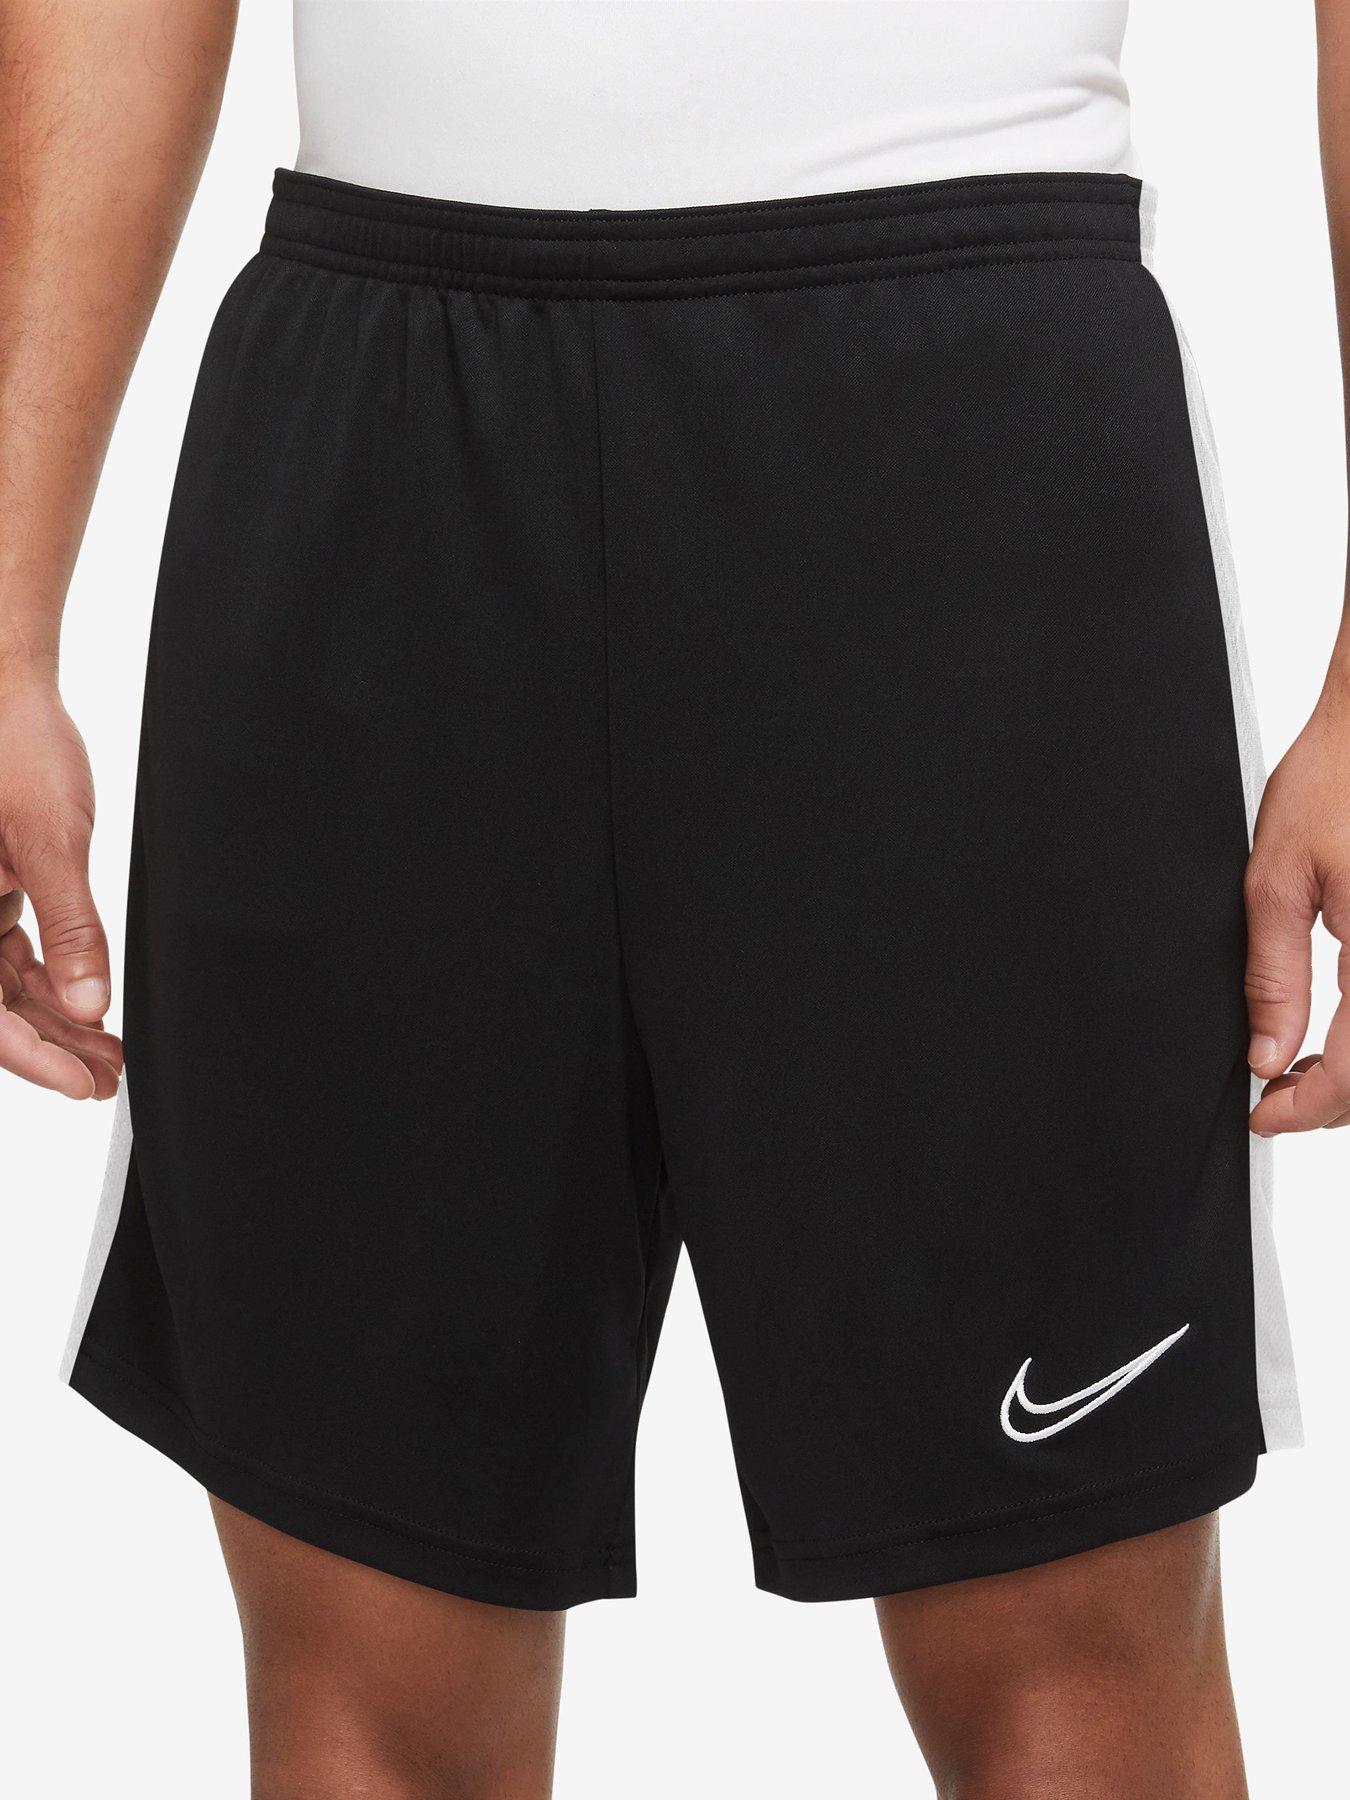 Shorts, Sportswear, Men, Nike